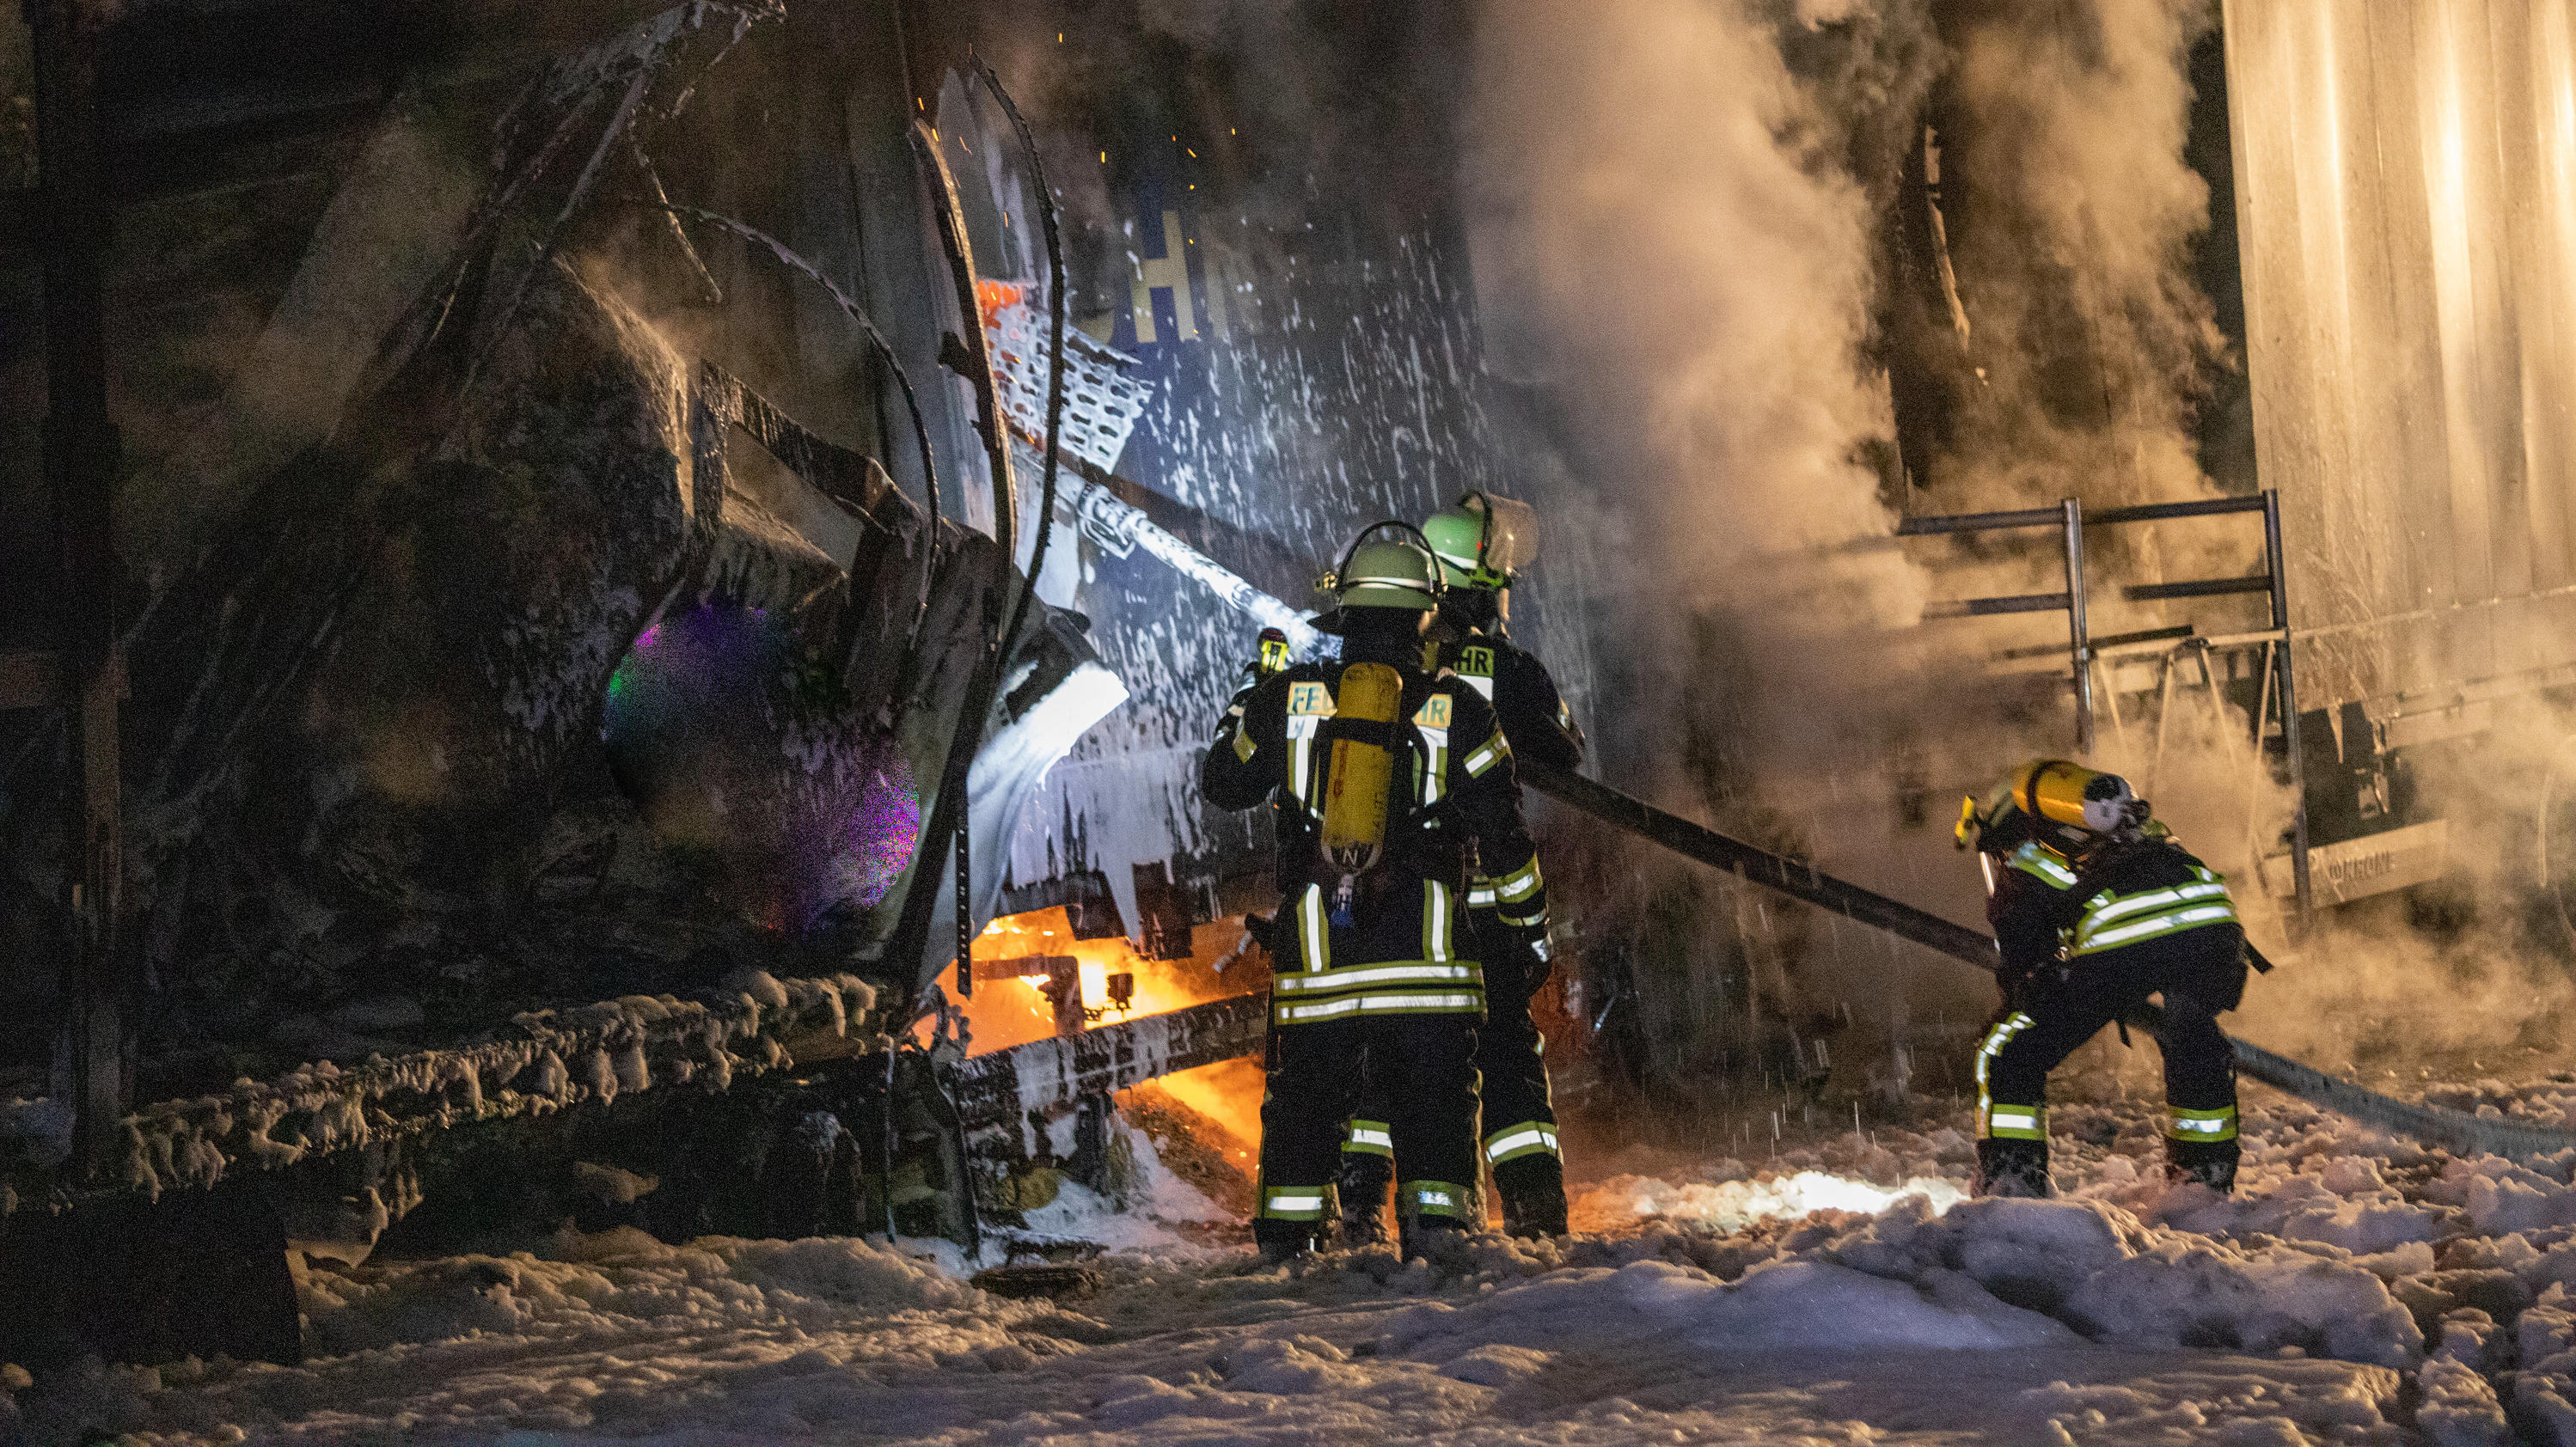 21.10.2021, Hessen, Burghaun: Einsatzkräfte der Feuerwehr löschen brennende Lastkraftwagen, die bei einem Unfall aufeinander gefahren sind. Foto: Fuldamedia/dpa +++ dpa-Bildfunk +++